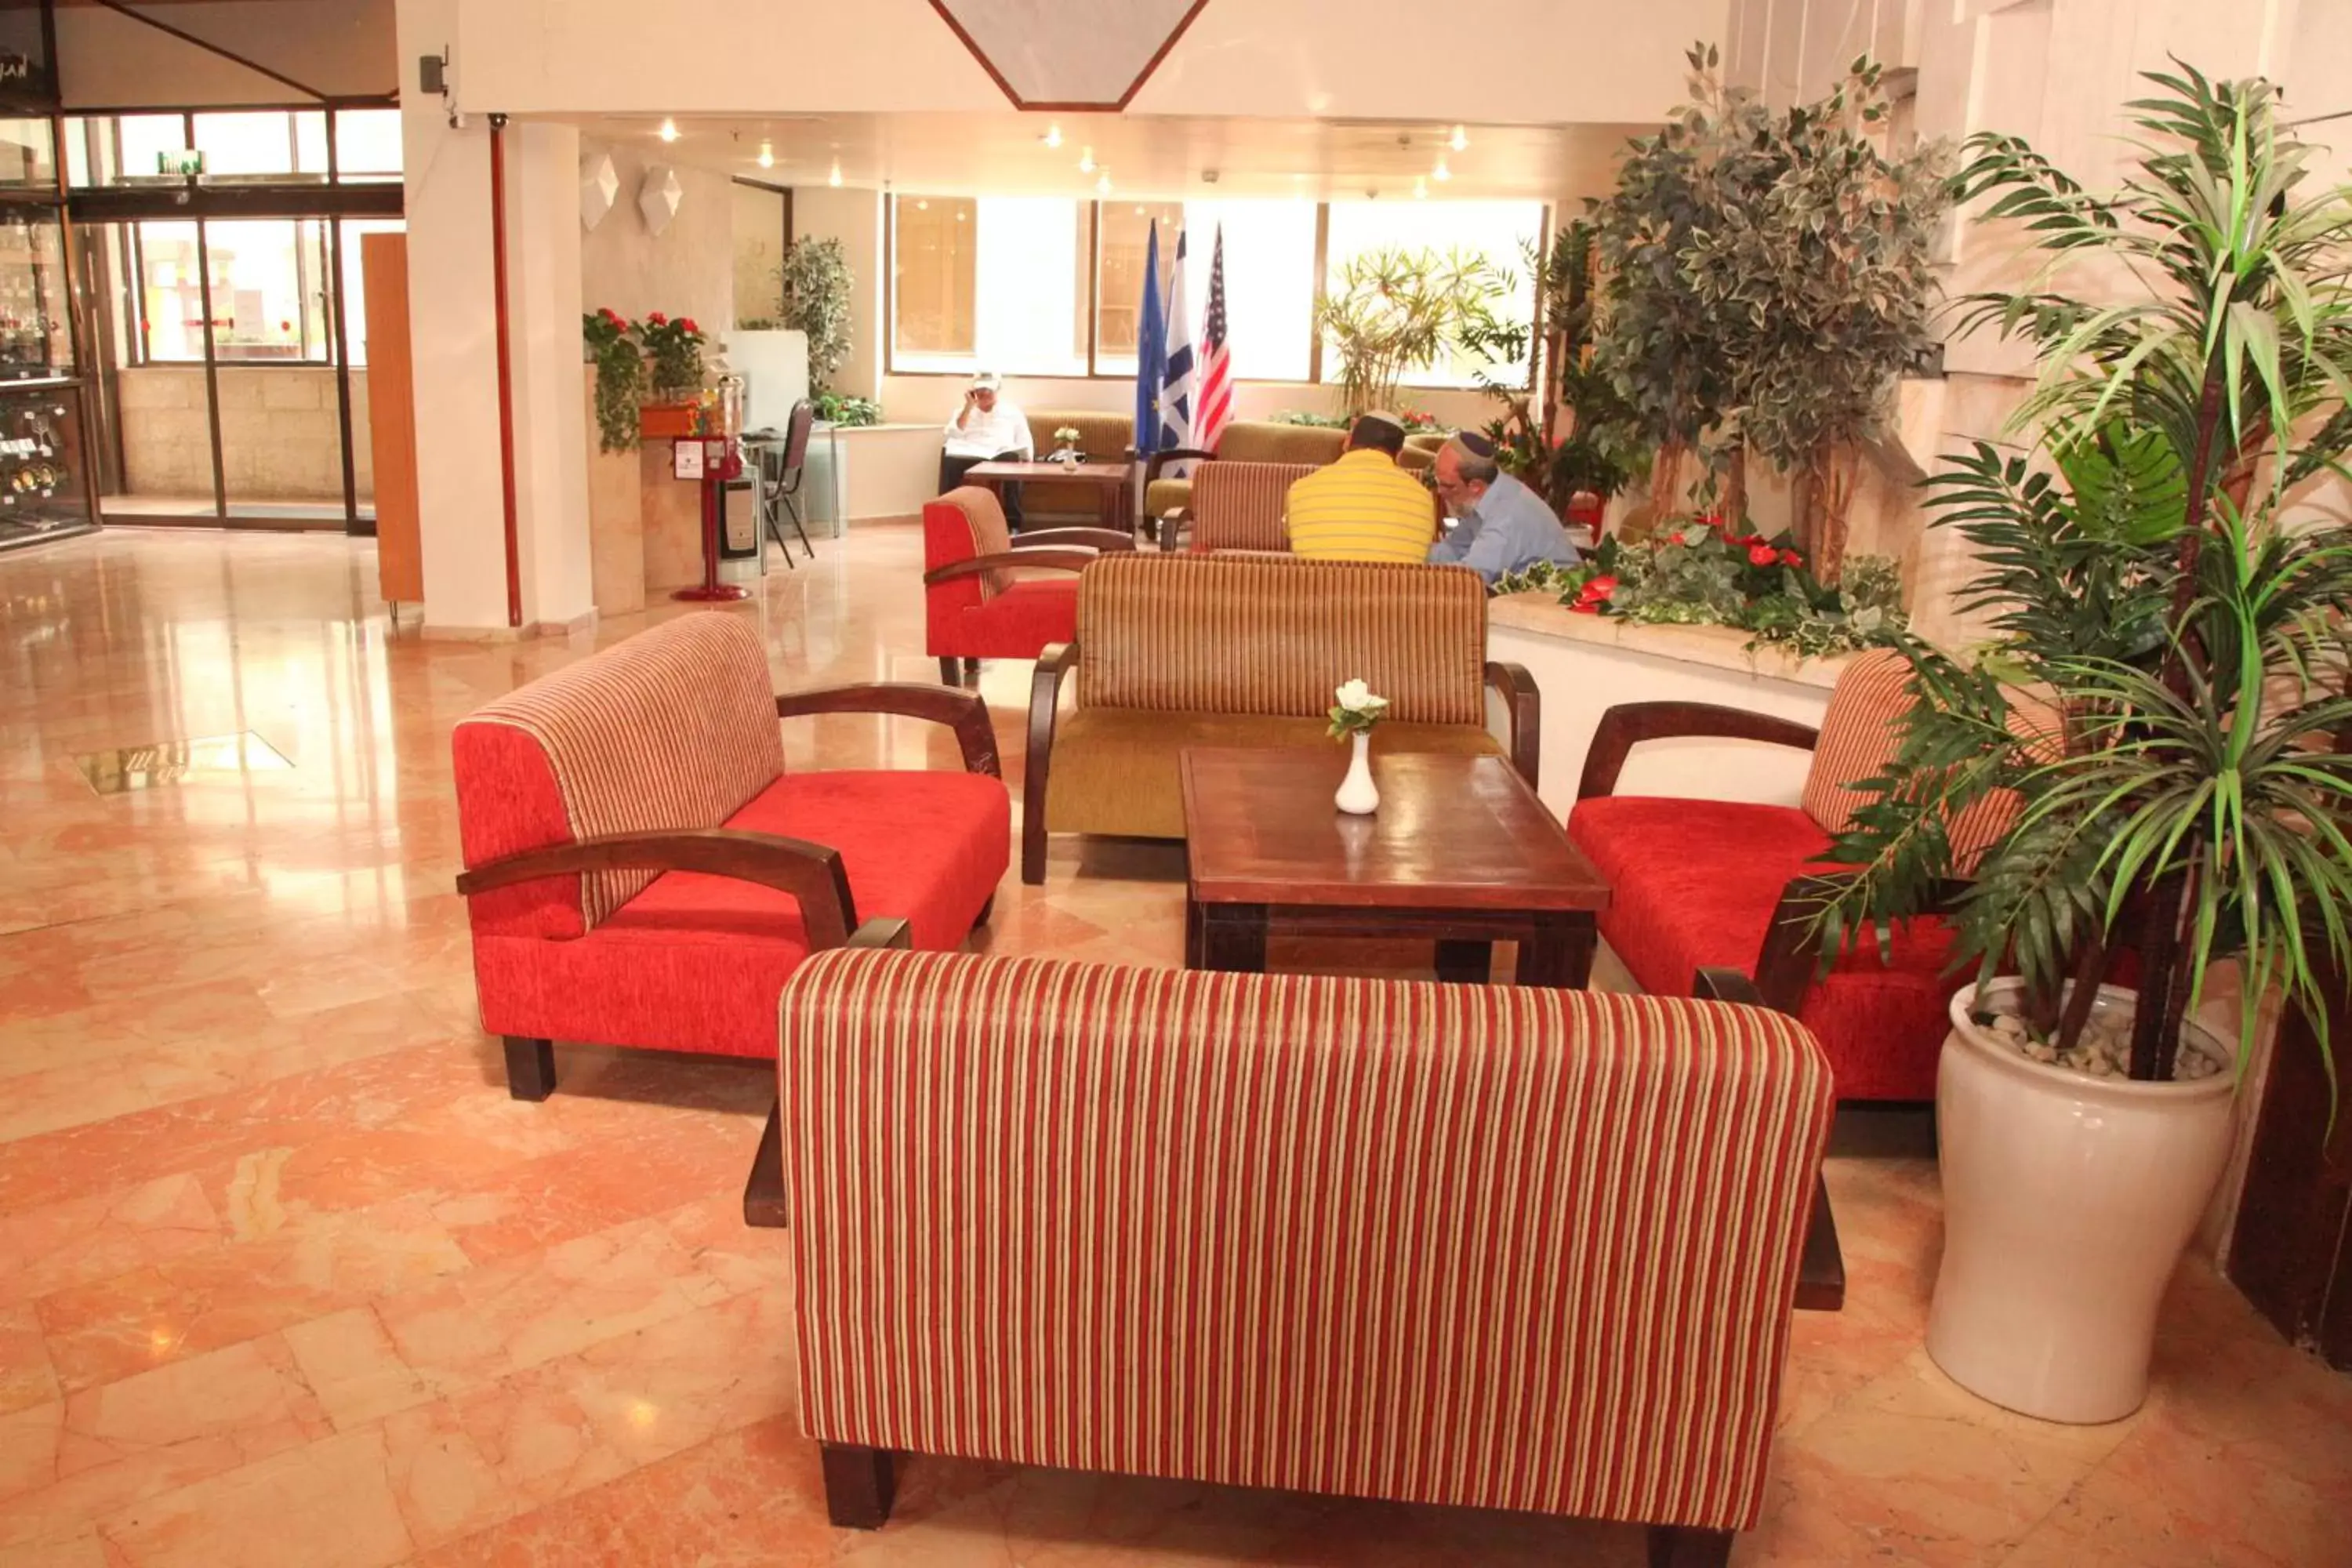 Lobby or reception, Lobby/Reception in Lev Yerushalayim Hotel